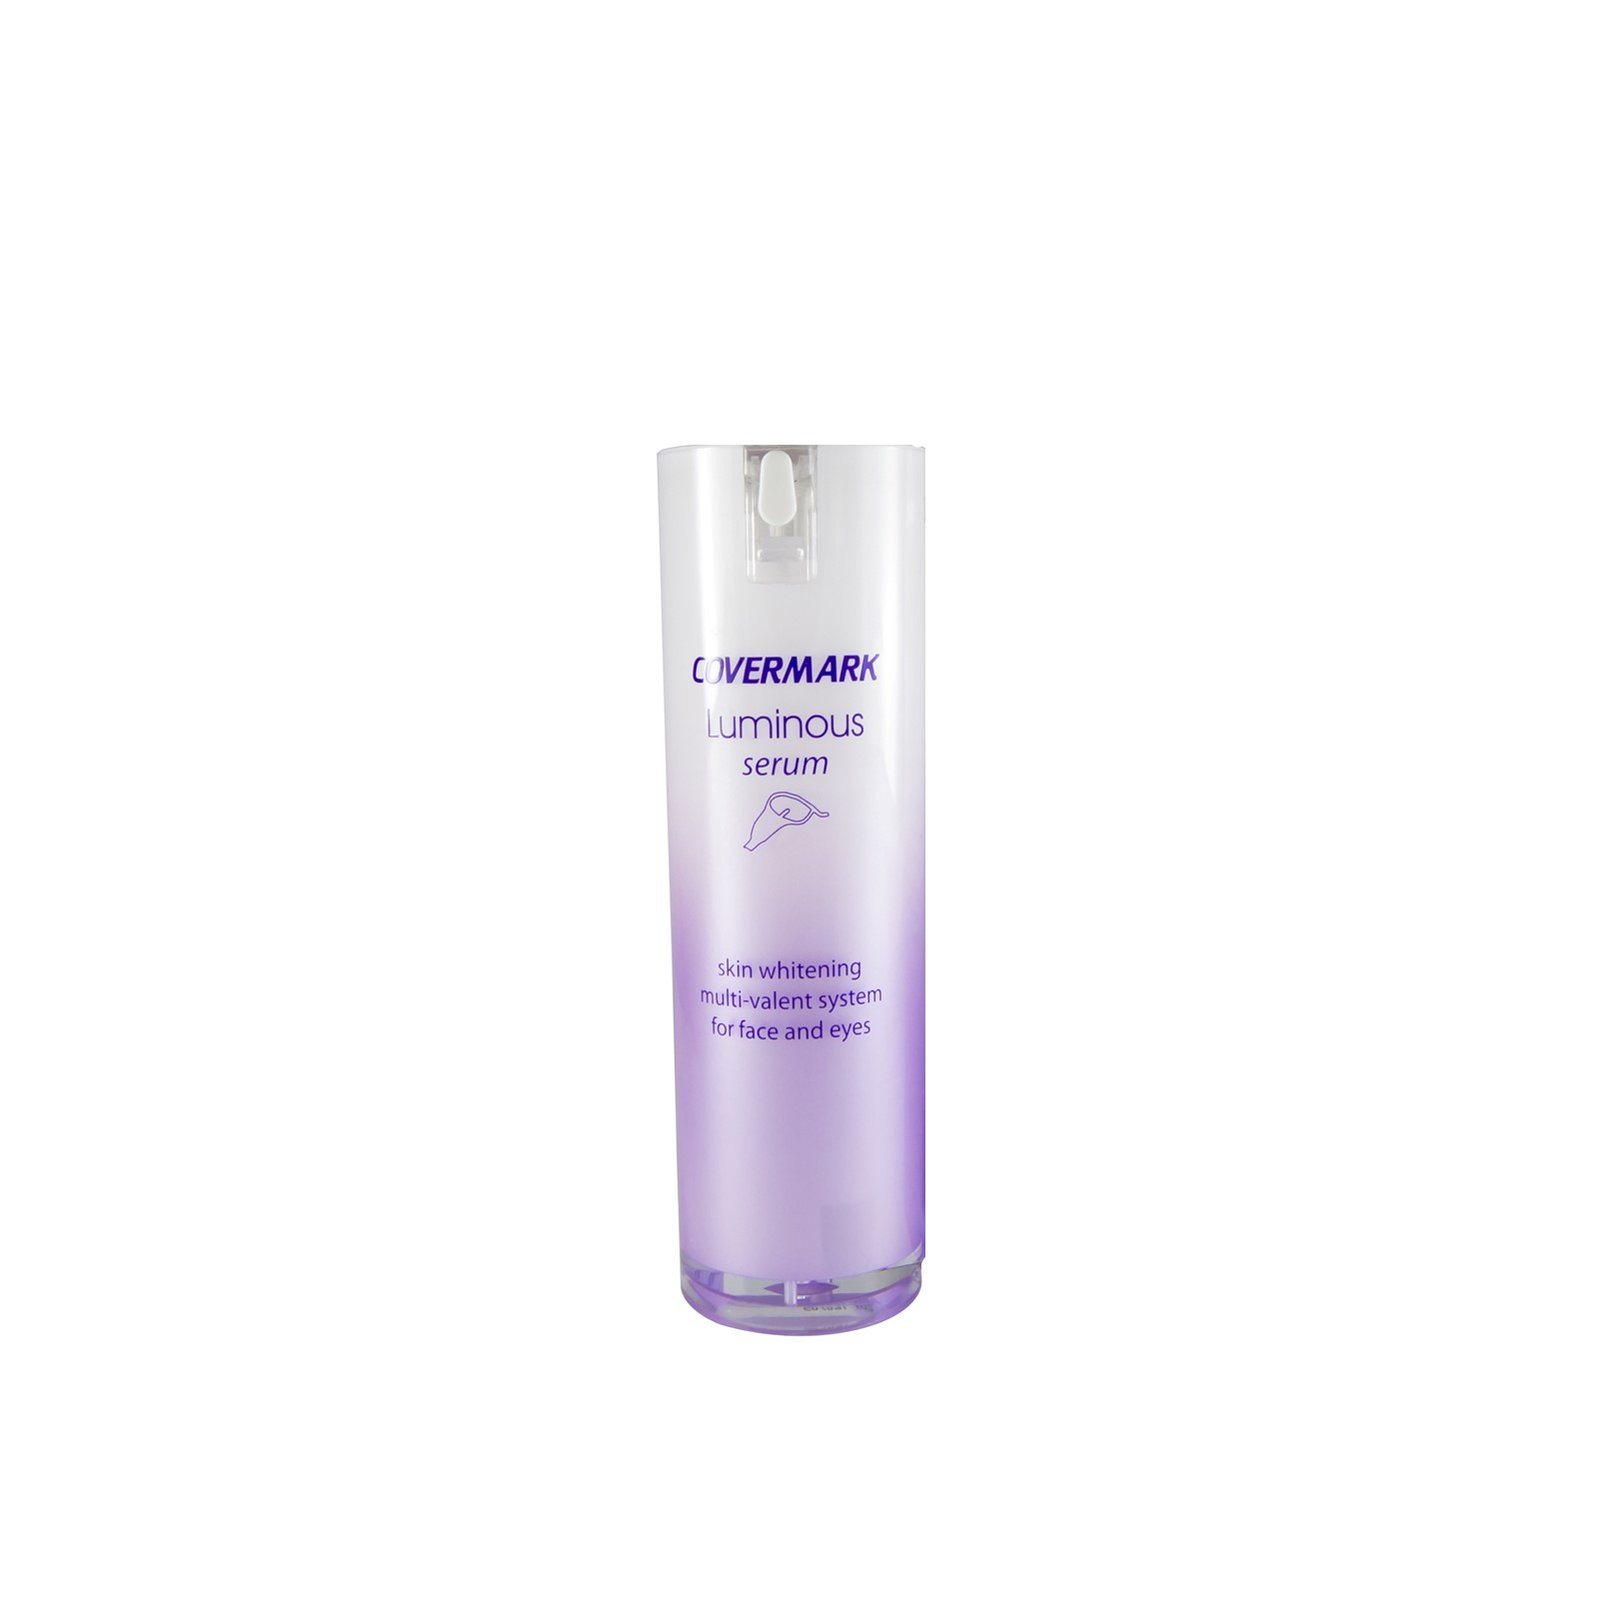 Covermark Luminous Serum Skin Whitening Cream-Gel For Face & Eyes 20ml (0.68 fl oz)